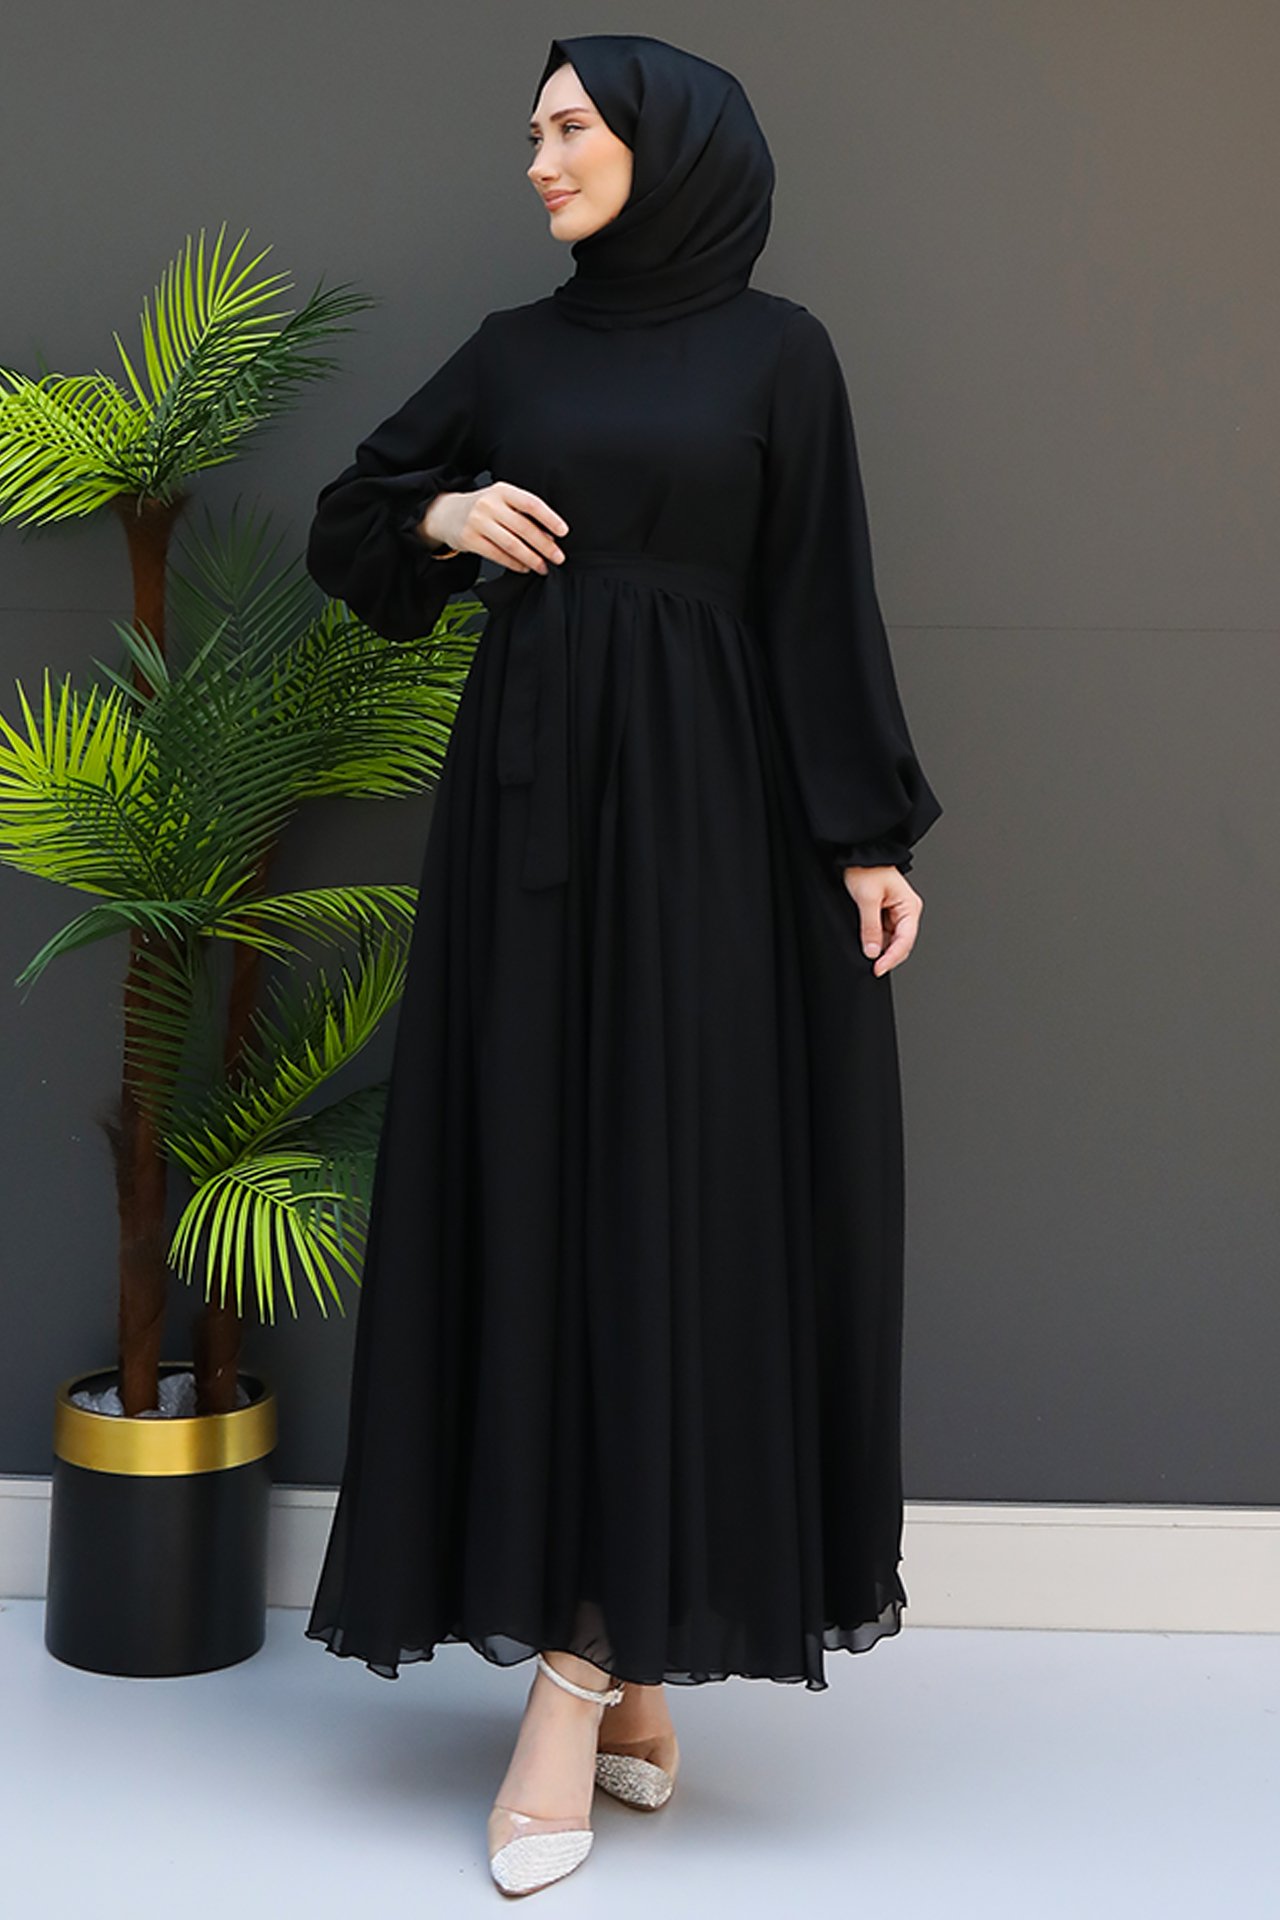 GİZ AGİYİM - Nare Tesettür Şifon Elbise Siyah